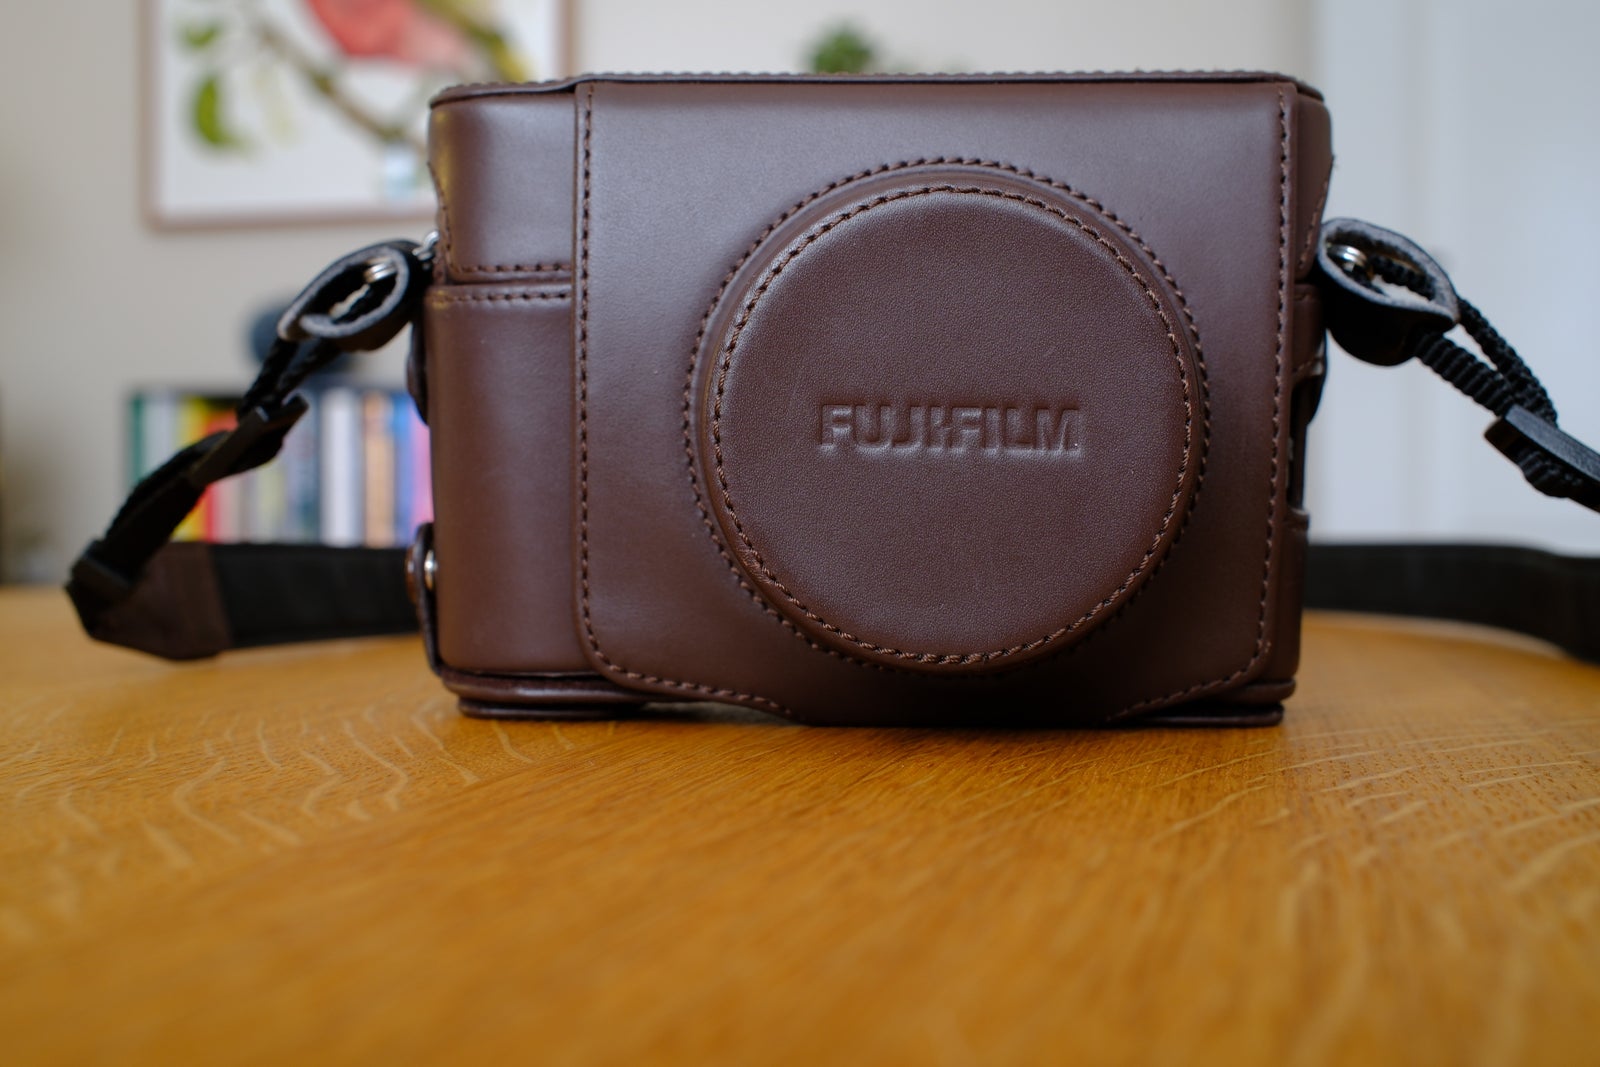 Fujifilm, X100F, 24 megapixels